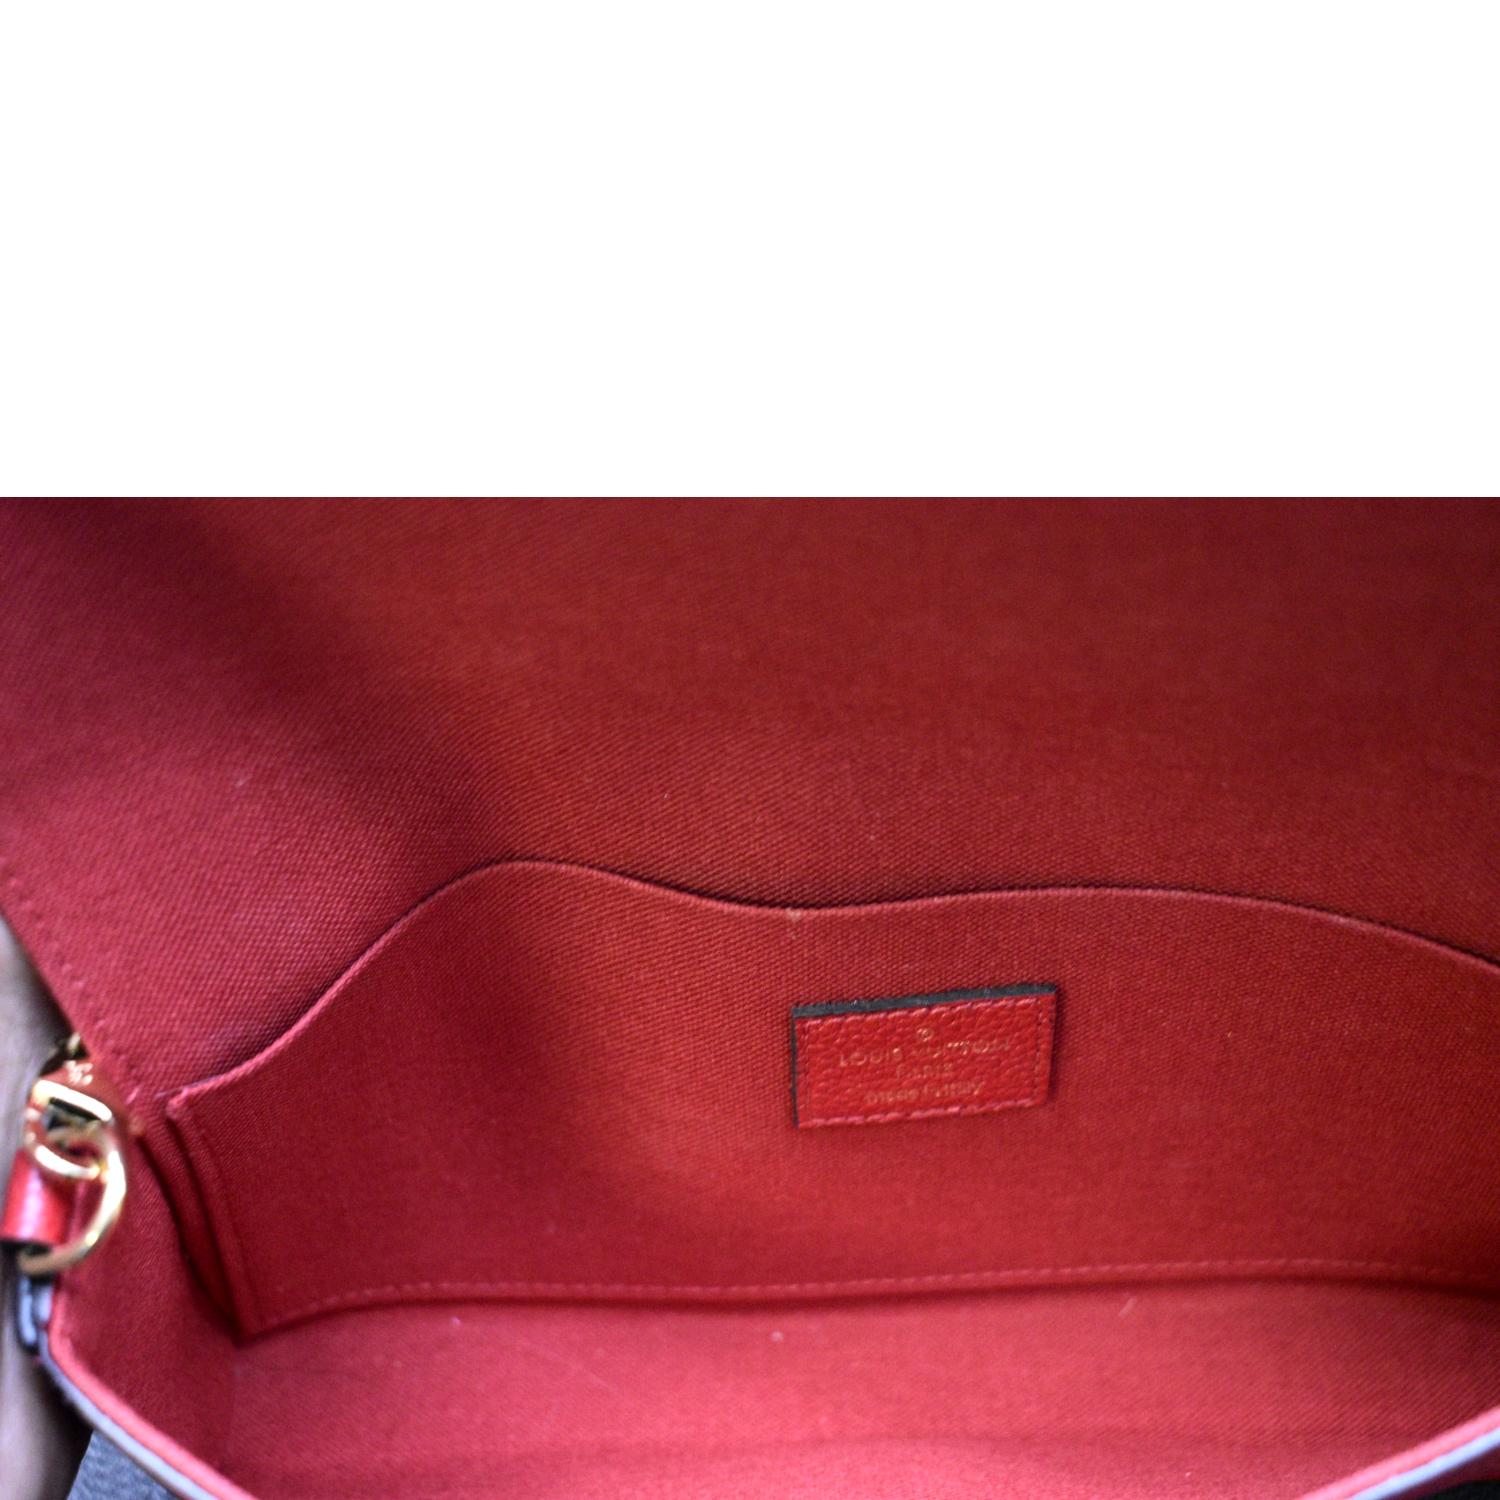 Louis Vuitton Red Leather Monogram Empreinte Felicie Zip Pouch